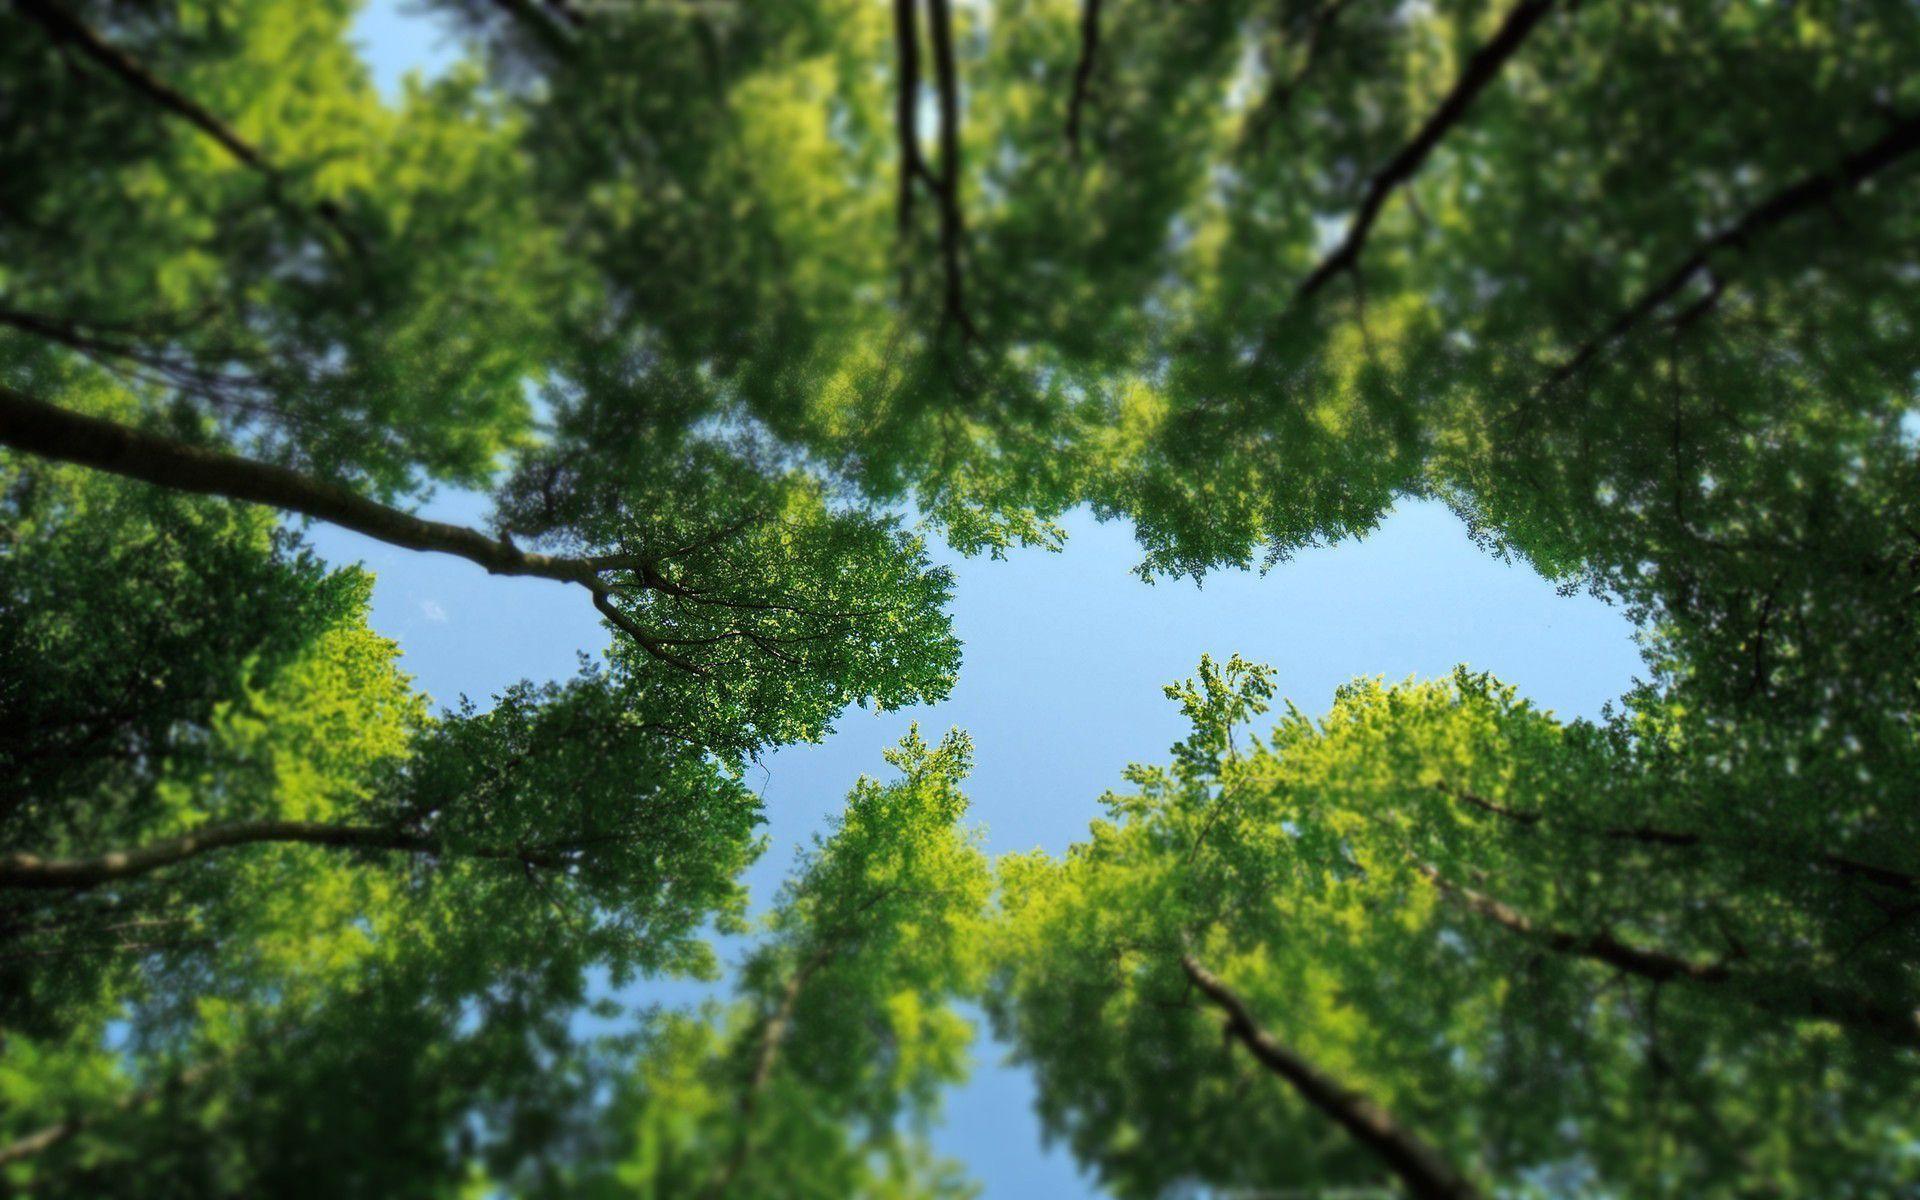 Với Hình nền cây đẹp, bạn sẽ thấy một khung cảnh yên bình và tươi đẹp trên màn hình máy tính. Những tán cây xanh mát sẽ đưa bạn đến một thế giới khác và giúp bạn thư giãn tuyệt đối. Bạn sẽ không thể cưỡng lại cảm giác tuyệt vời khi ngắm nhìn hình nền cây này.